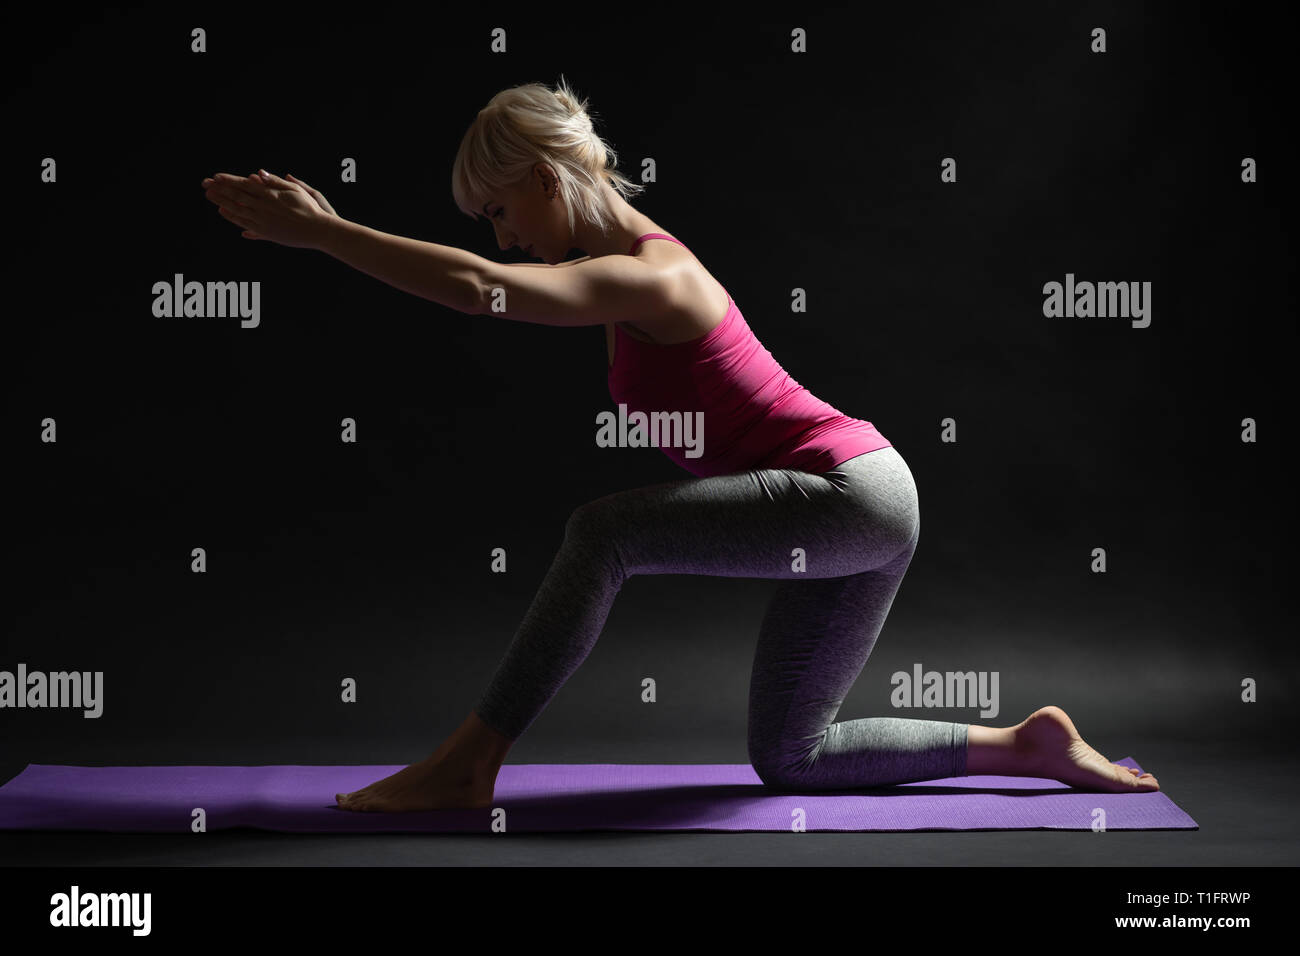 Frau Training Pilates. Kniend oberschenkelmuskeldehnung Übung. Stockfoto